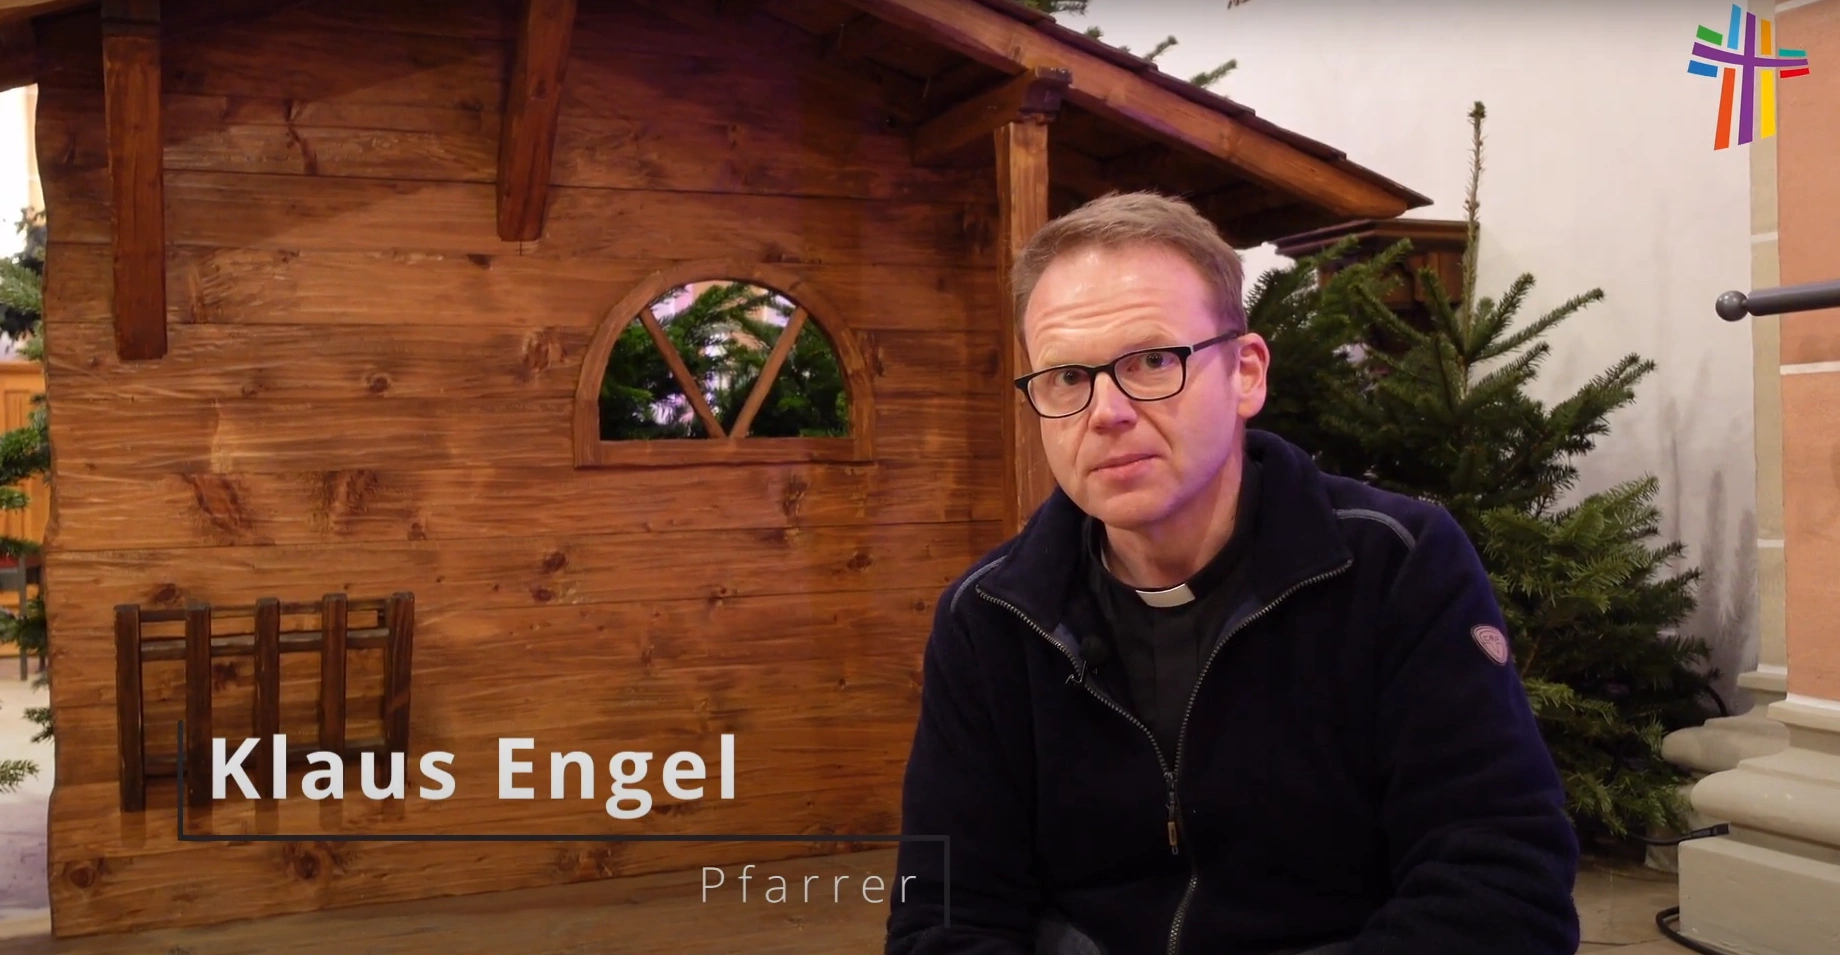 Pfarrer Klaus Engel spricht einen Weihnachtsgruß.